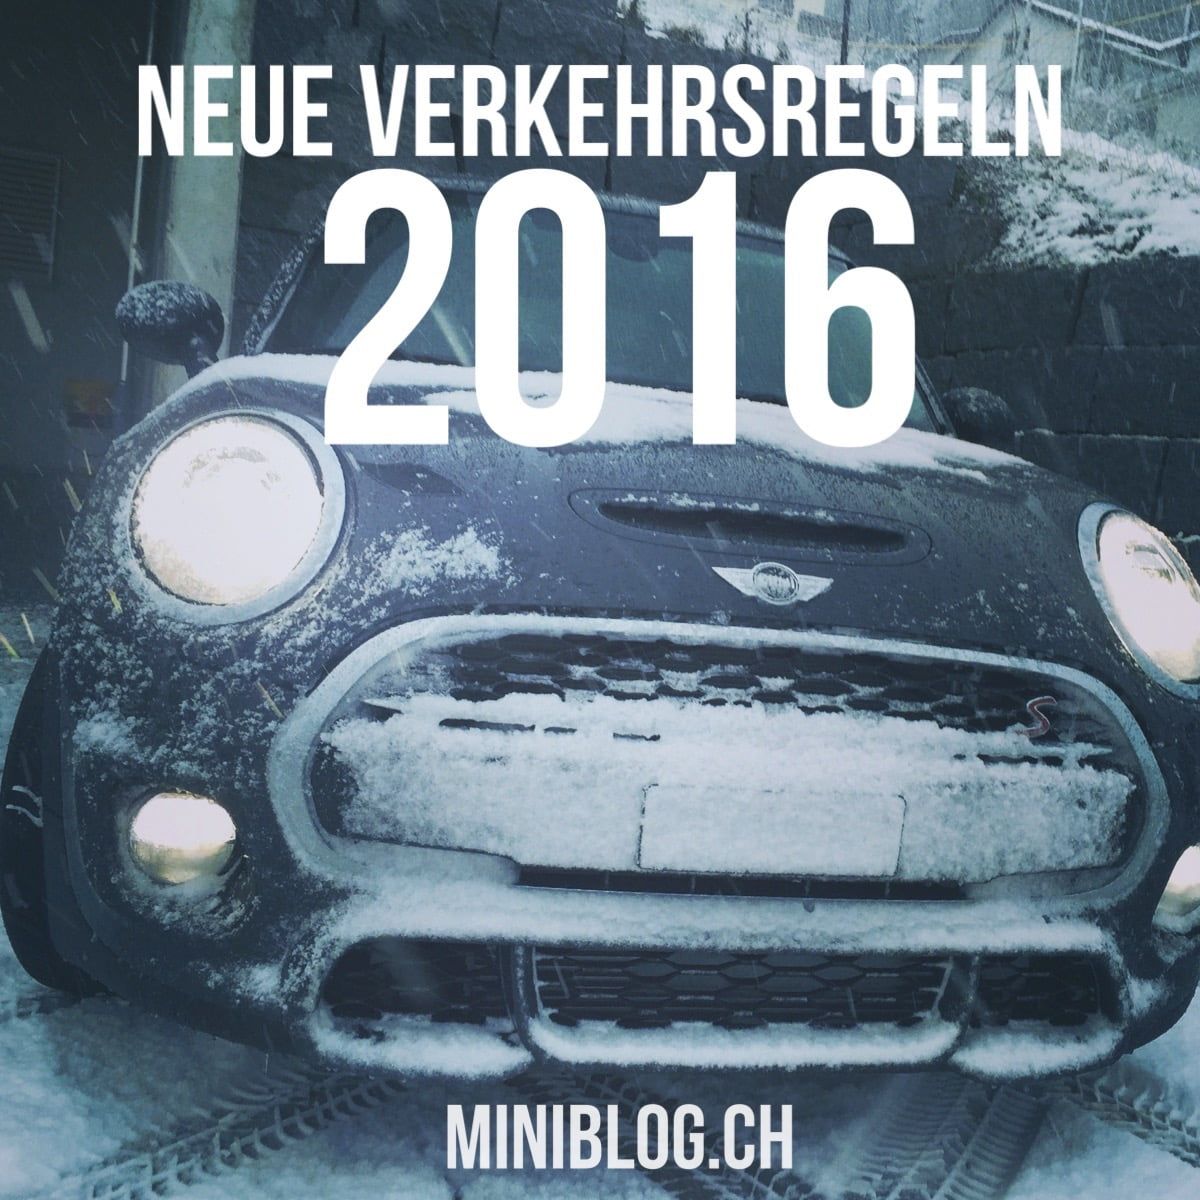 Das Jahr 2016 bringt neue Verkehrsregeln in der Schweiz.